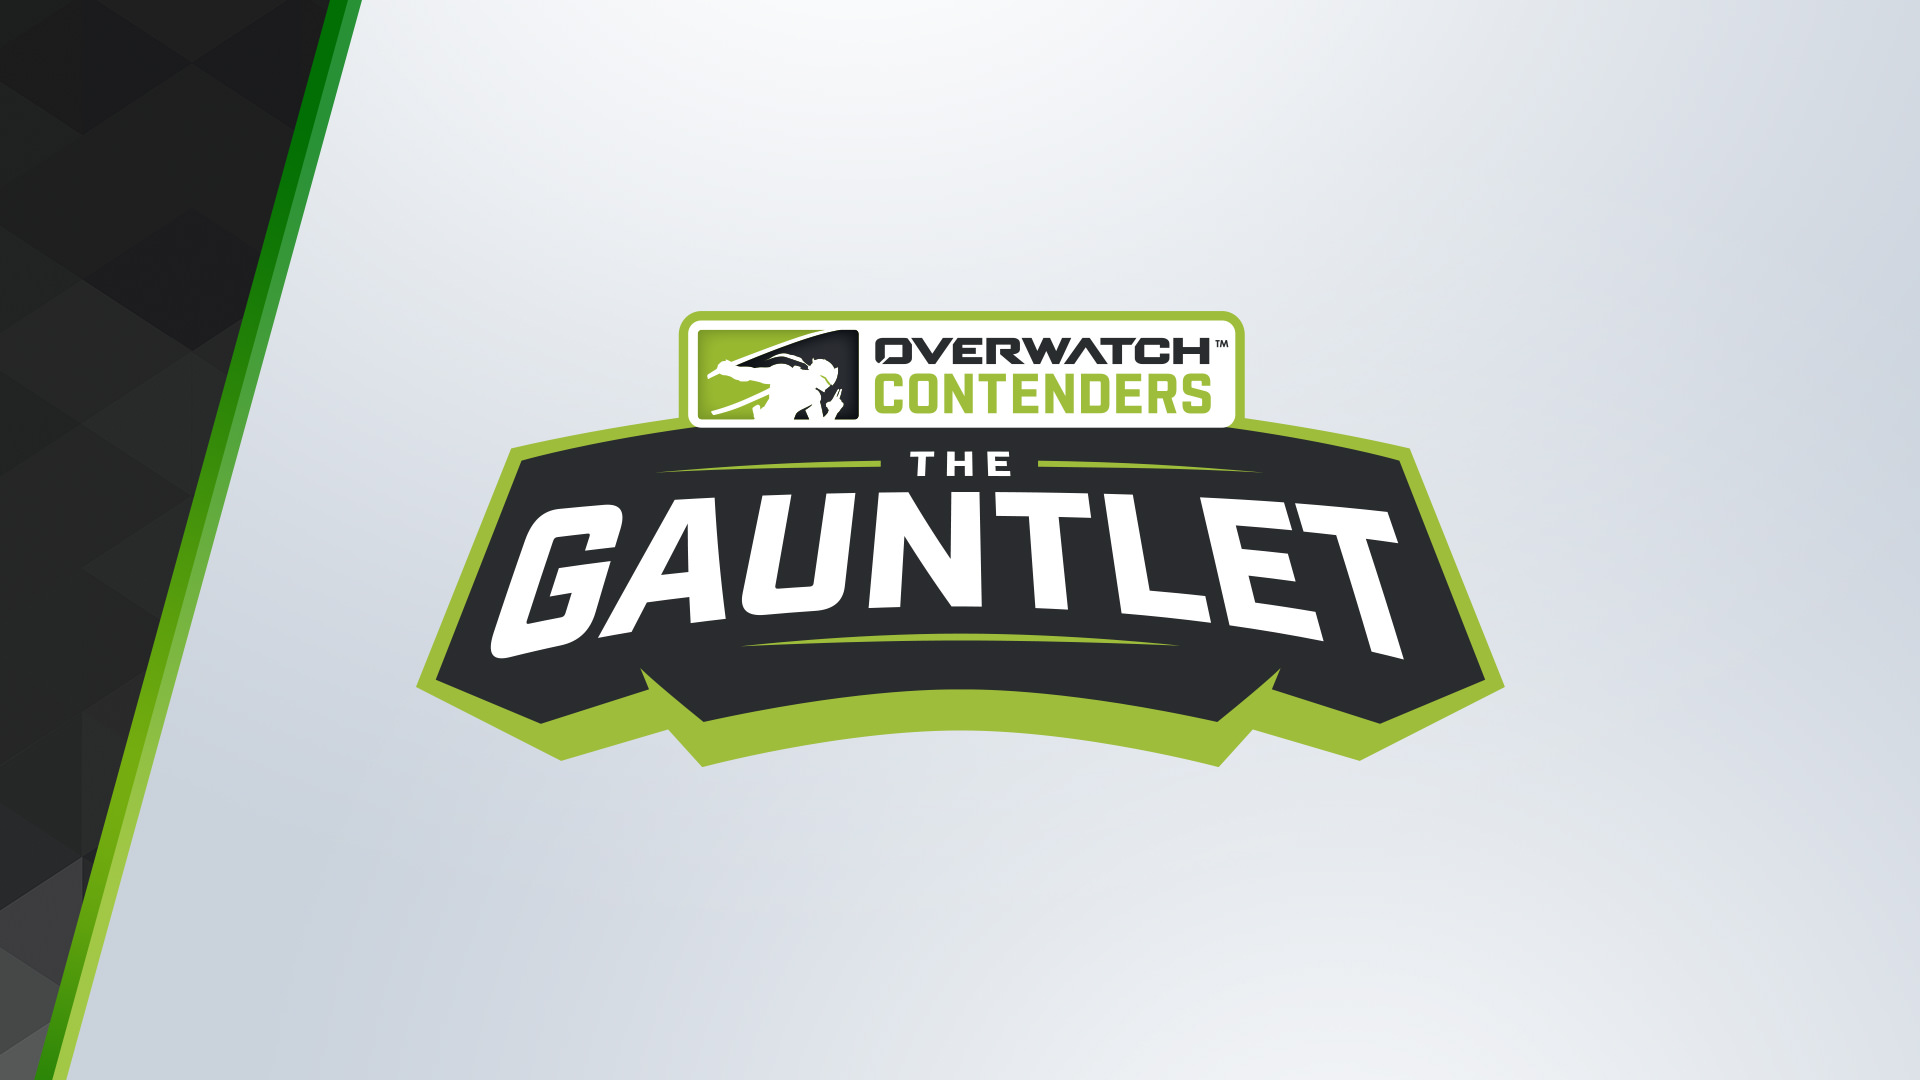 Overwatch Contenders Gauntlet's thumbnail